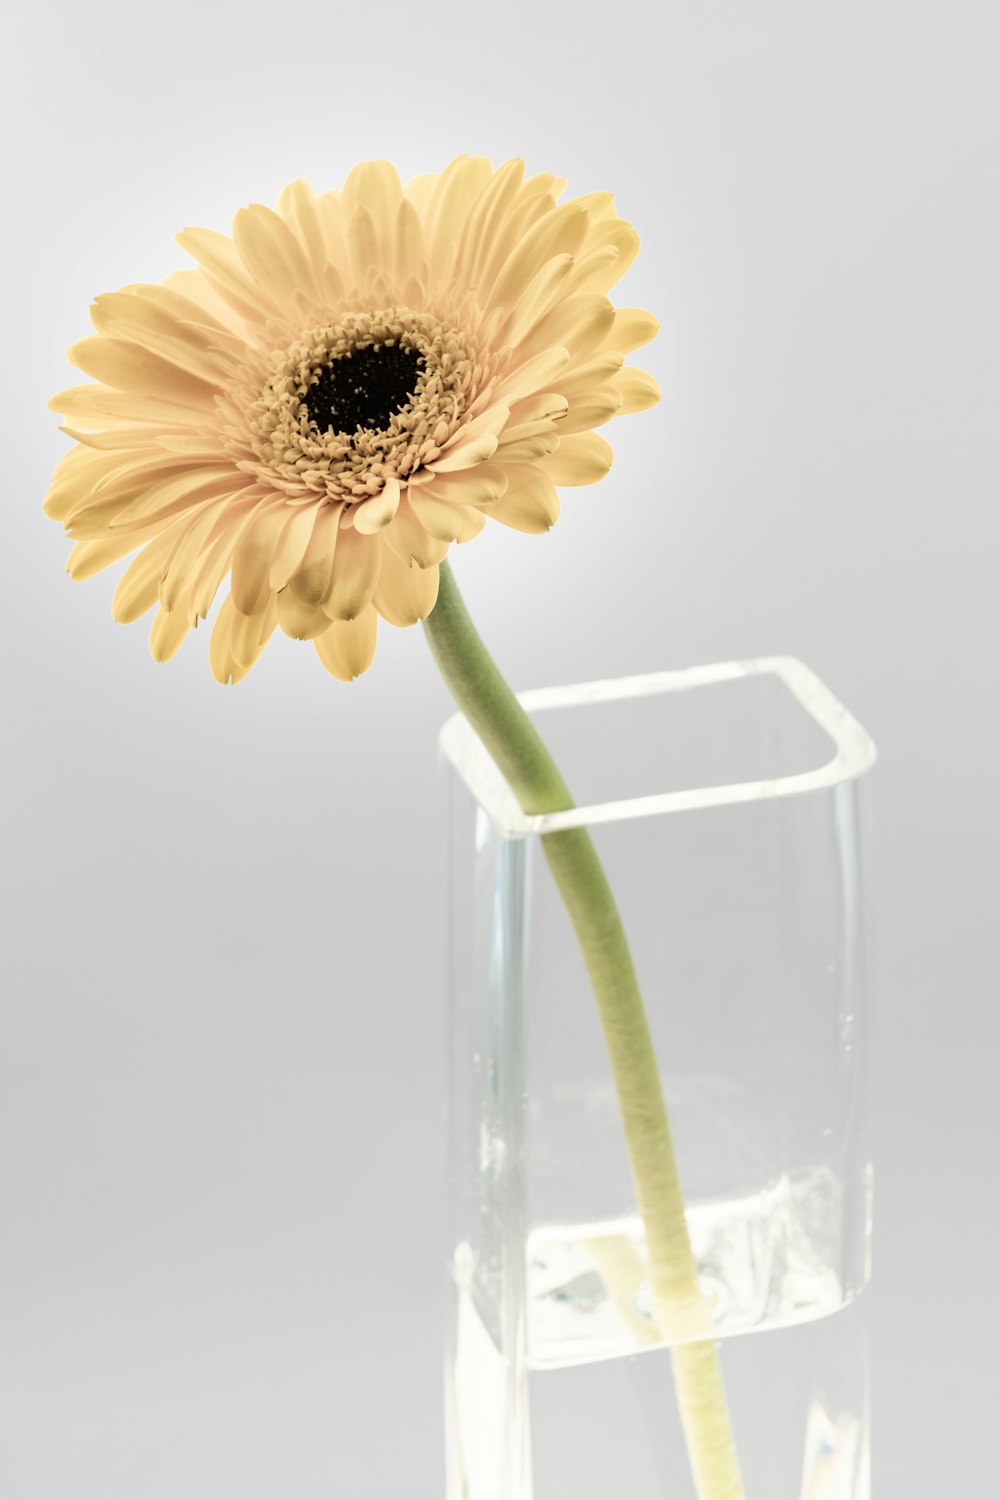 透明なガラスの花瓶に描かれた黄色いヒマワリ